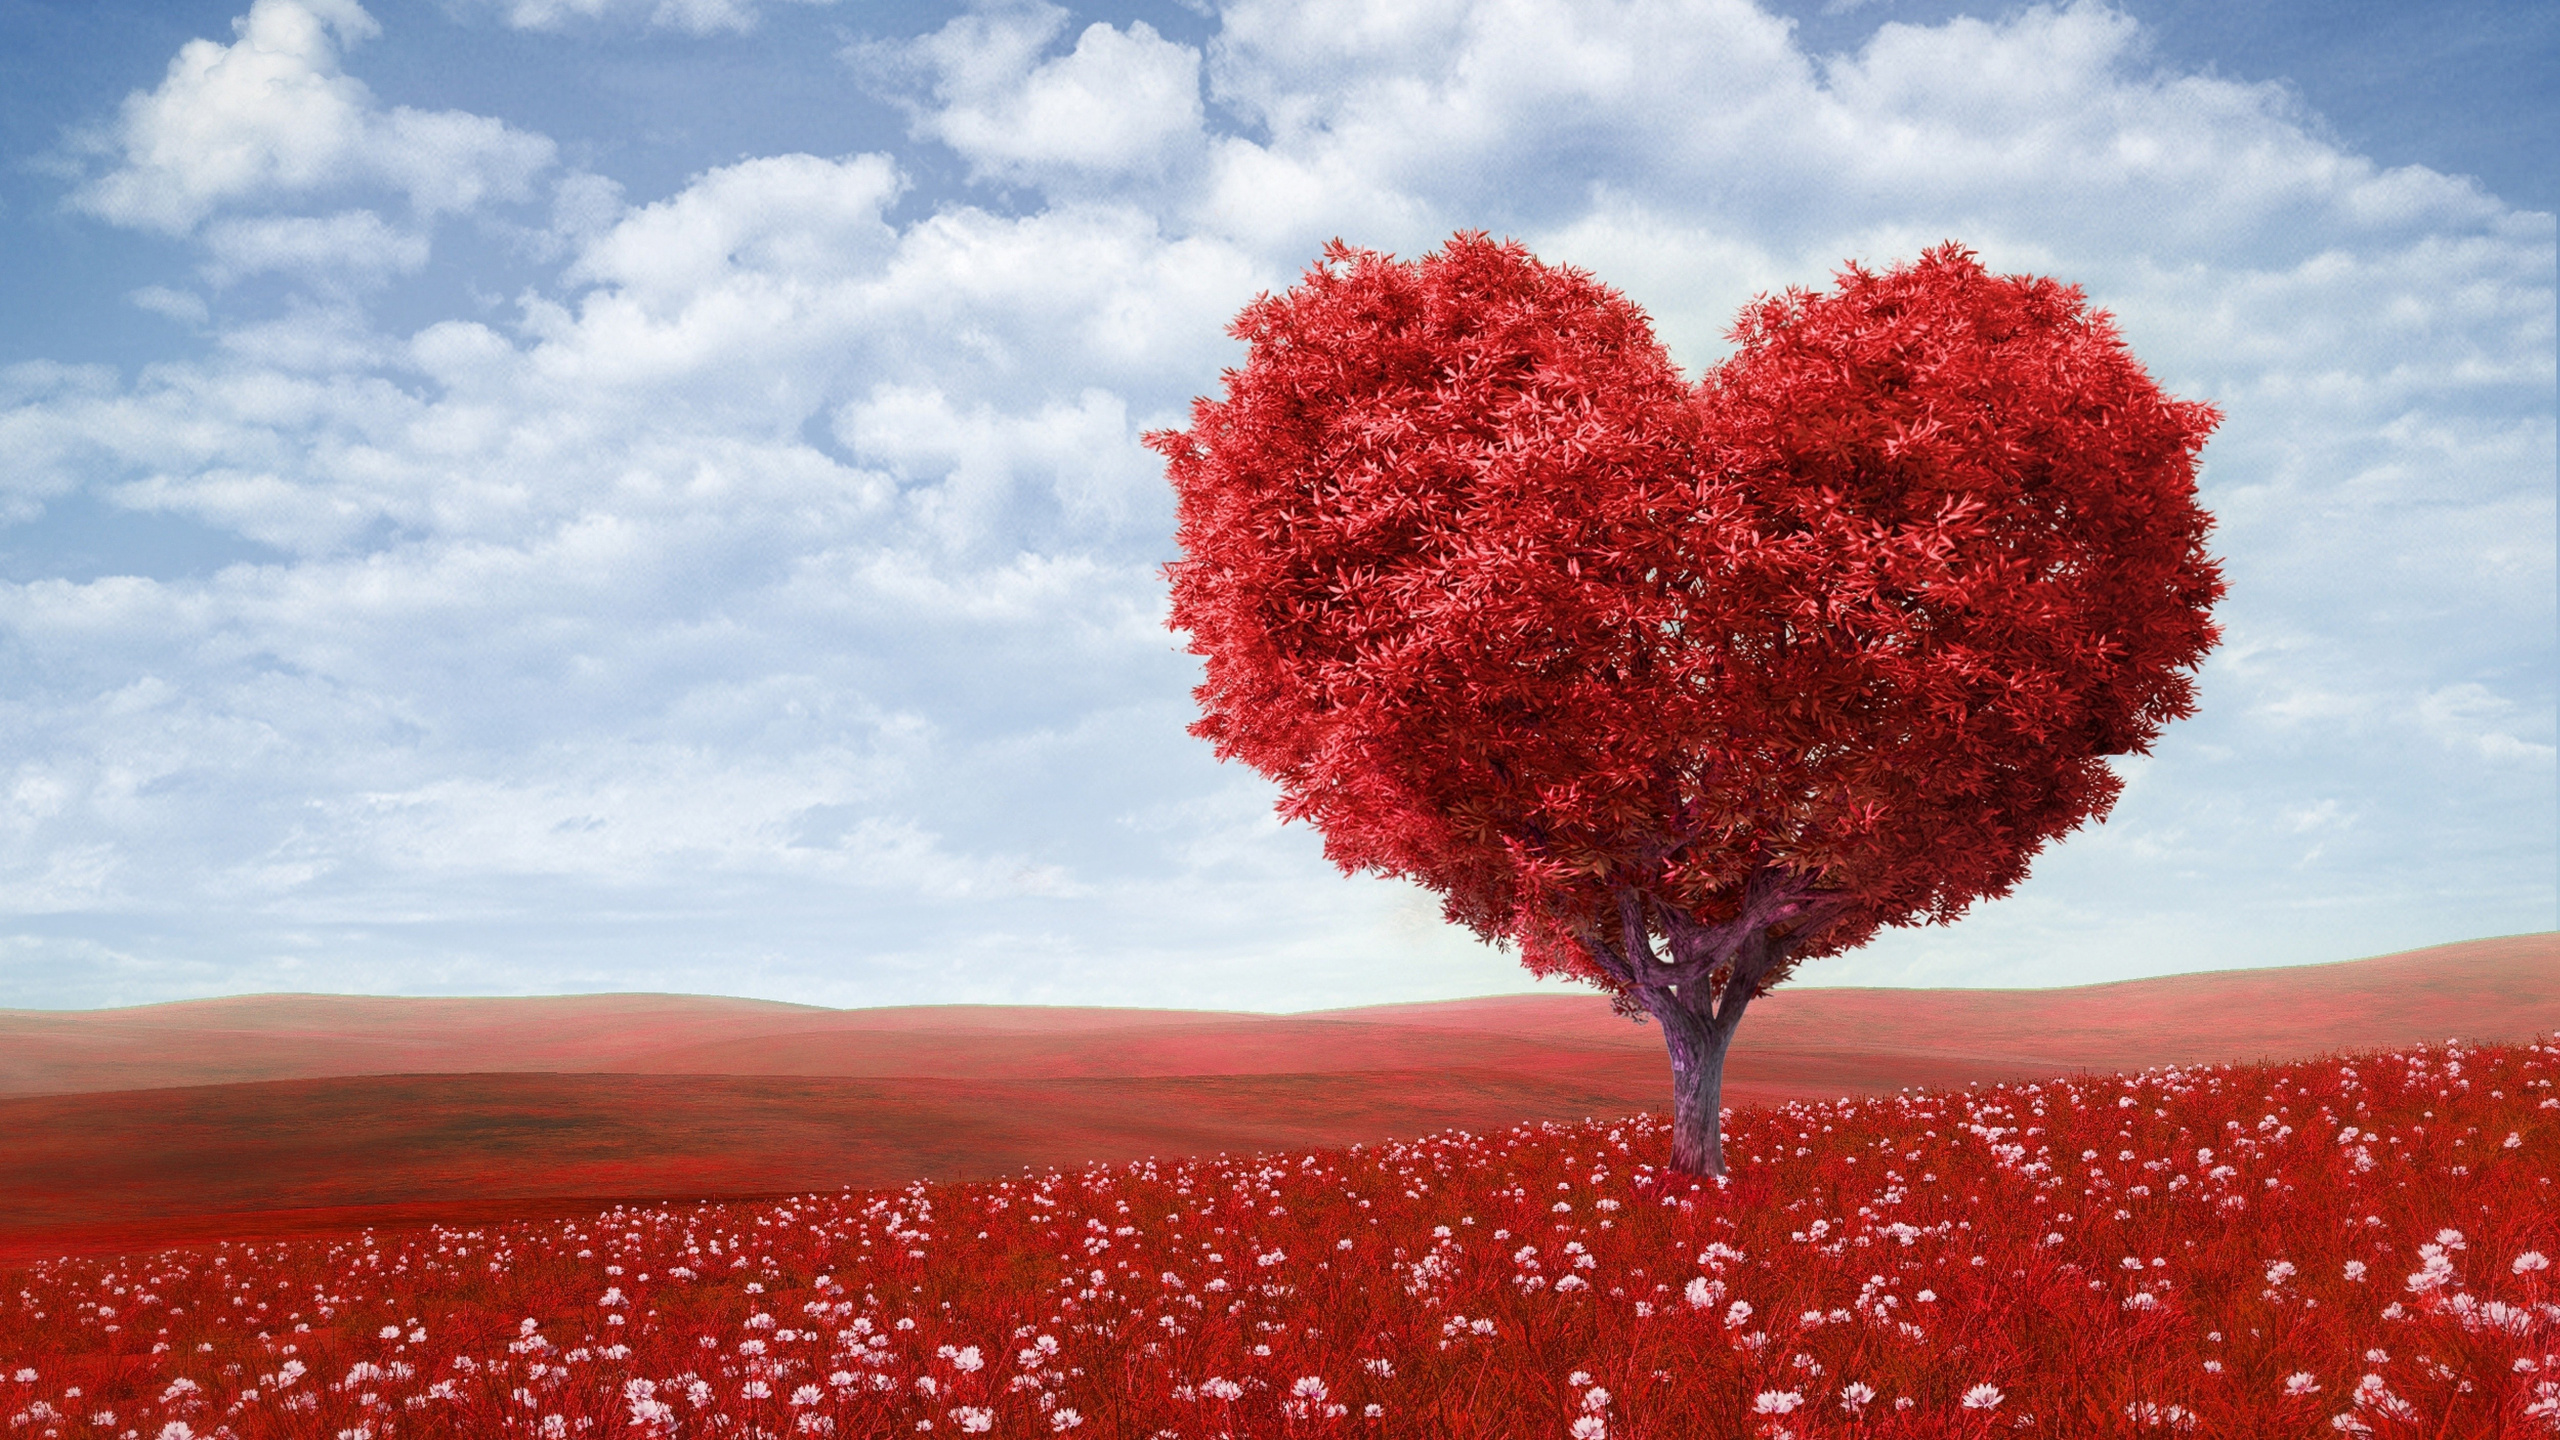 浪漫, 红色的, 爱情, 天空, 心脏 壁纸 2560x1440 允许